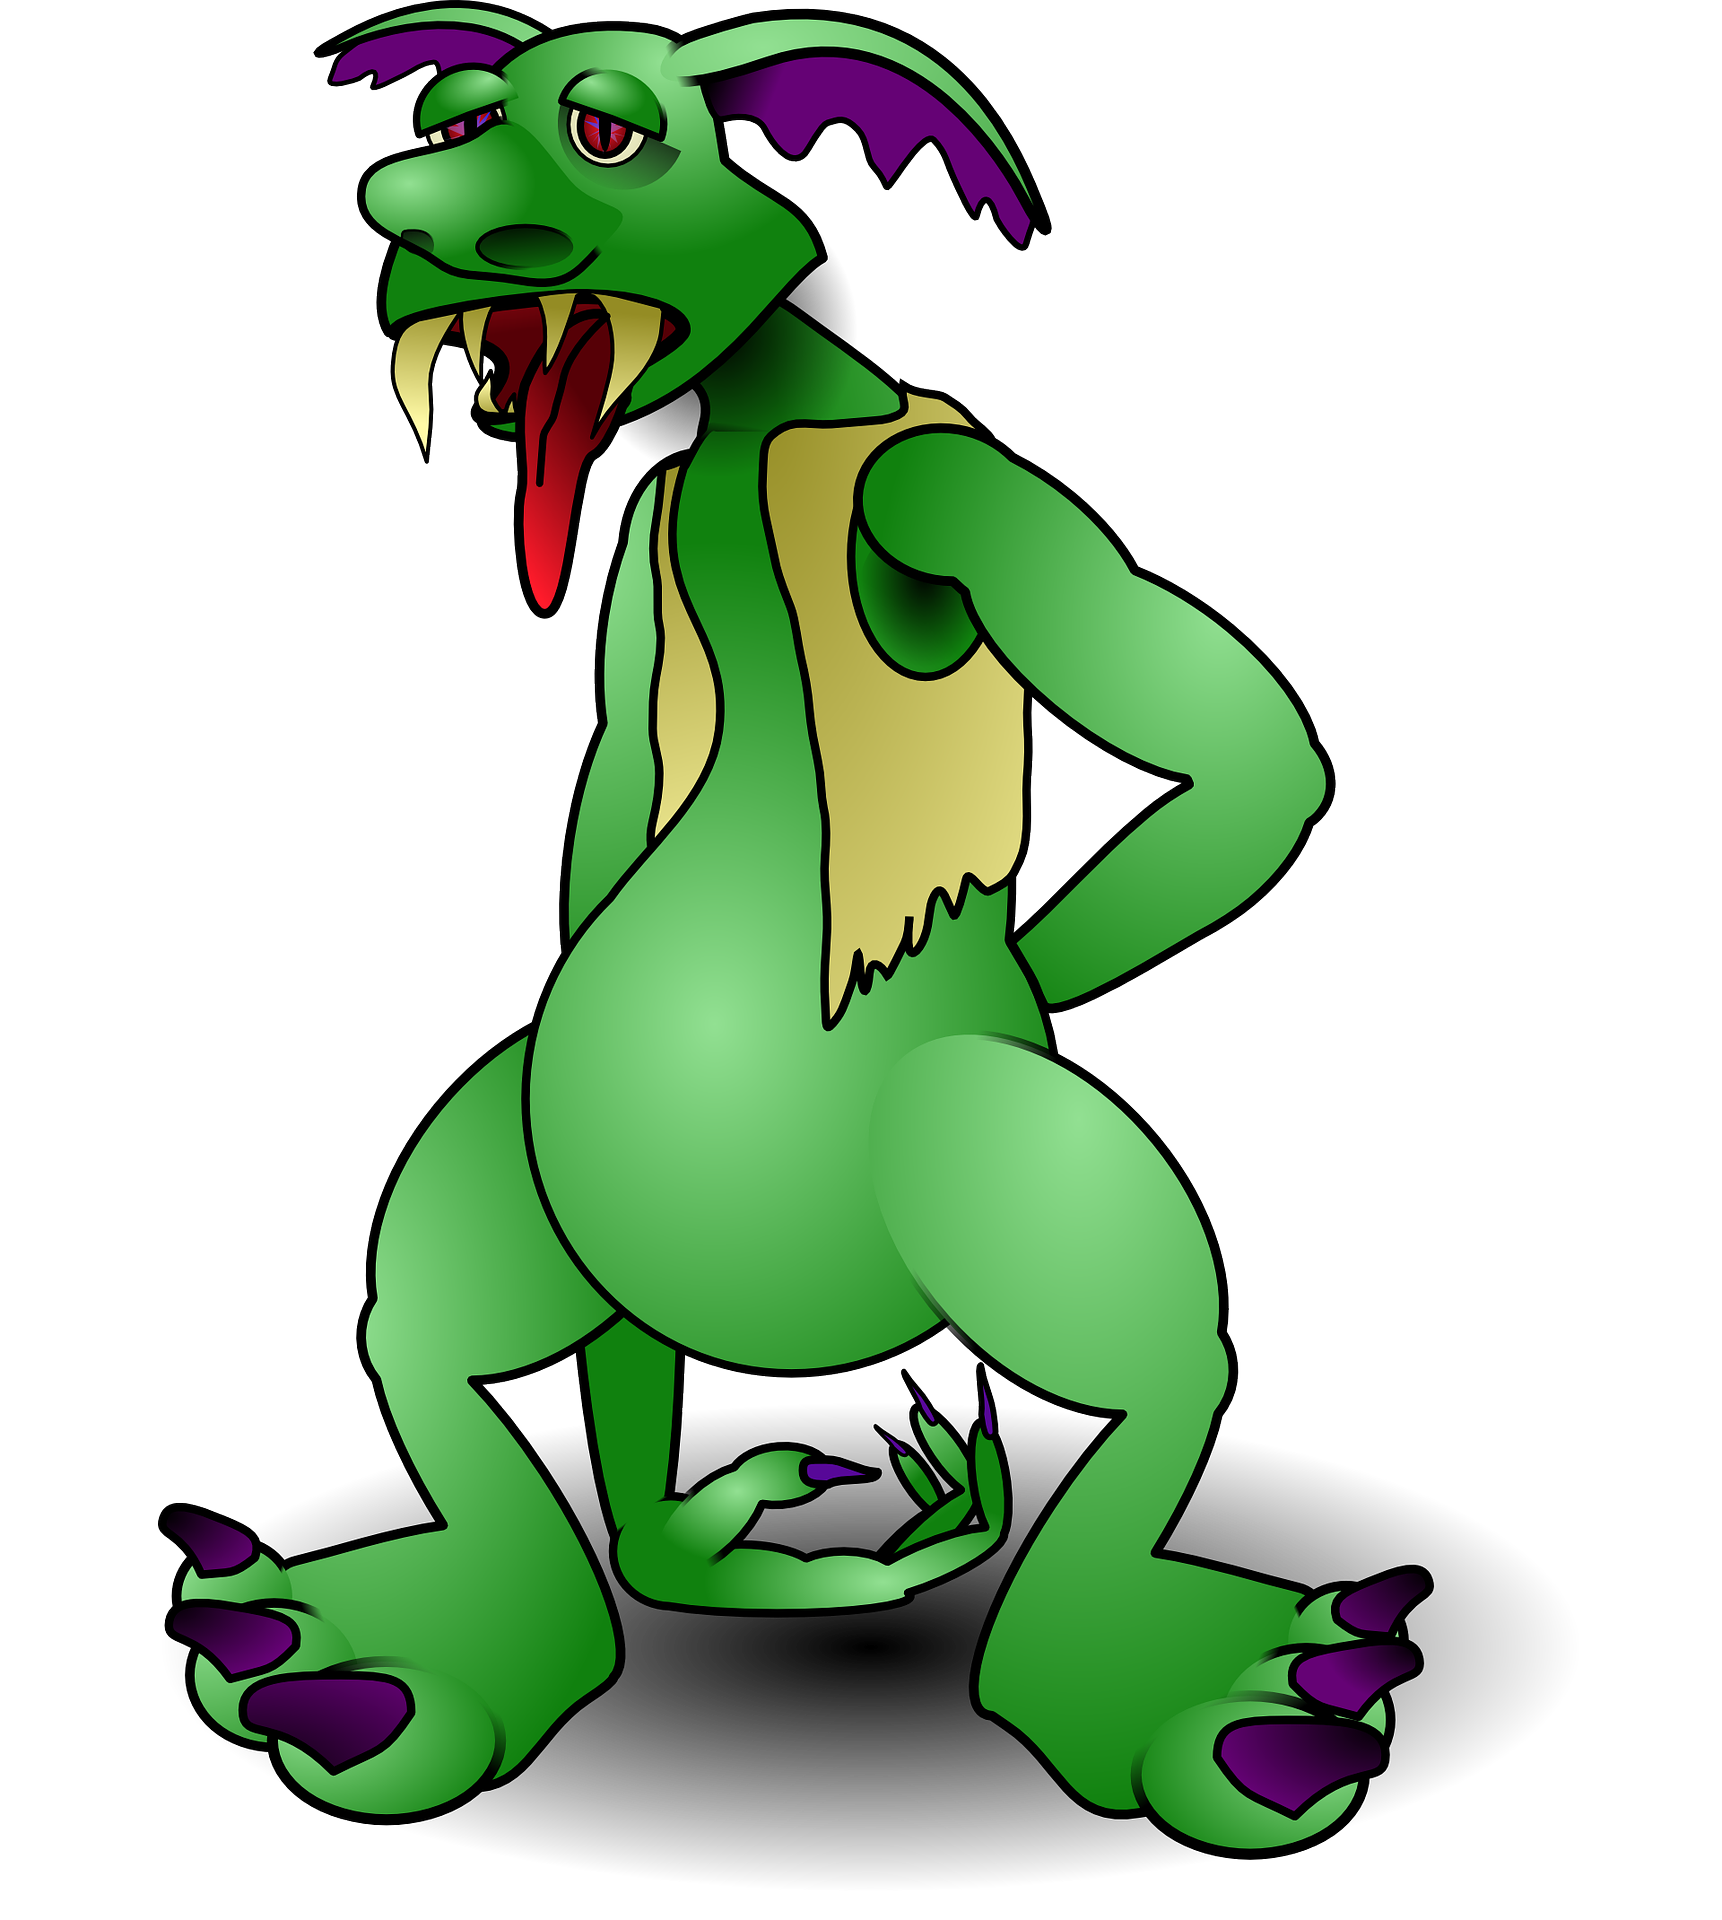 Fantasy Green Monster PNG Transparent Image